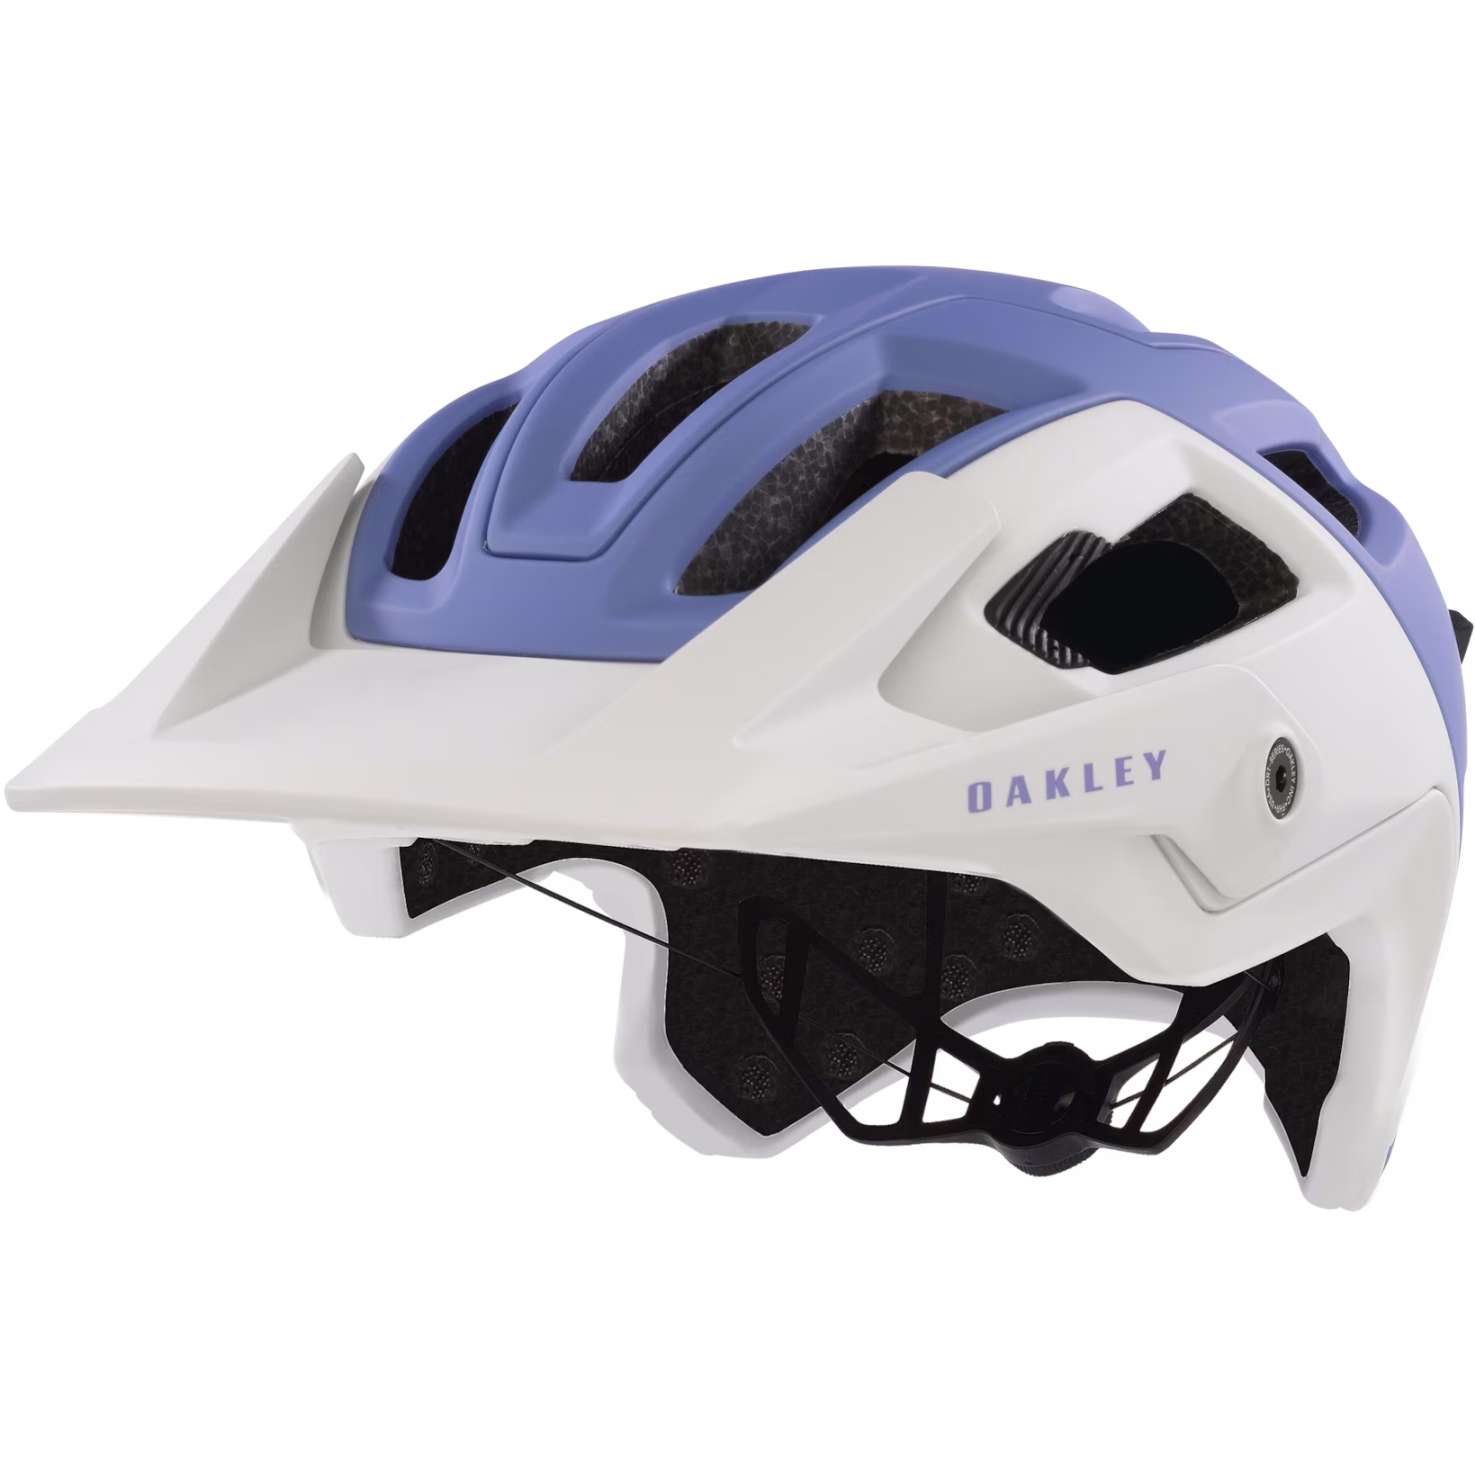 Produktbild von Oakley DRT5 Maven MIPS Helm - Matte Cool Gray/Matte Lilac